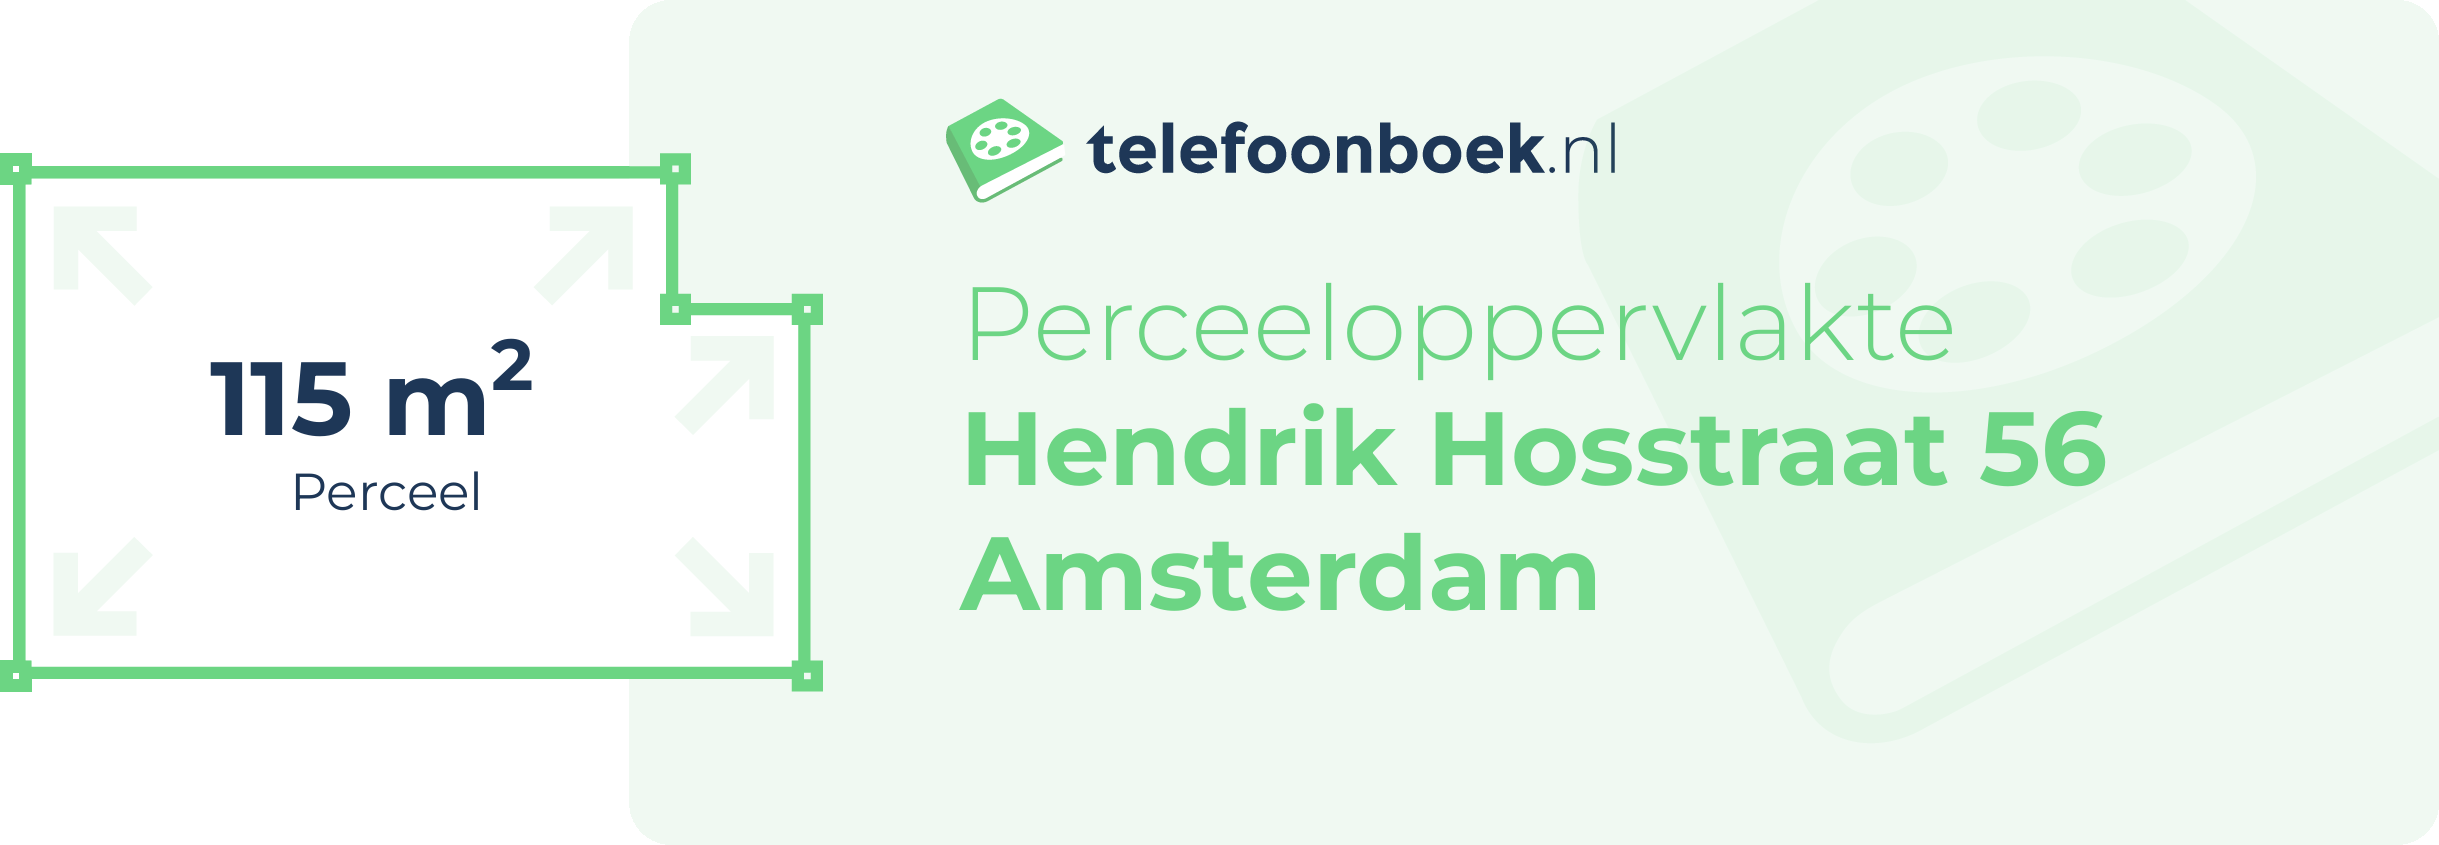 Perceeloppervlakte Hendrik Hosstraat 56 Amsterdam